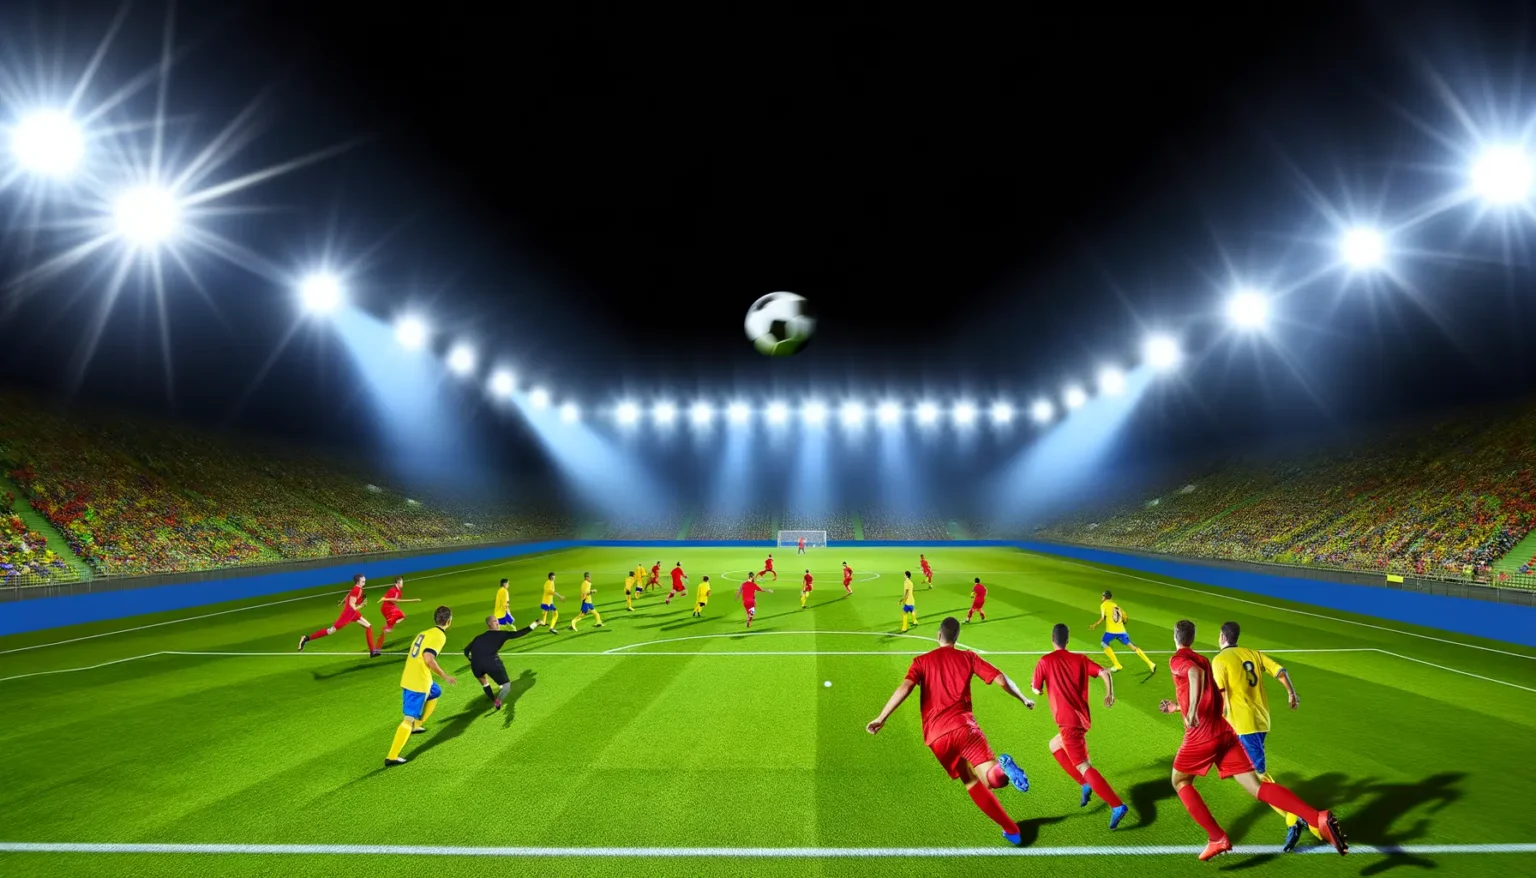 Lebhafte Szene in einem beleuchteten Fußballstadion bei Nacht mit Spielern in roten und gelben Trikots, die um den Ball kämpfen, während ein Spieler in Rot einen Schuss aufs Tor vorbereitet und die Menge auf den Rängen gespannt zusieht.